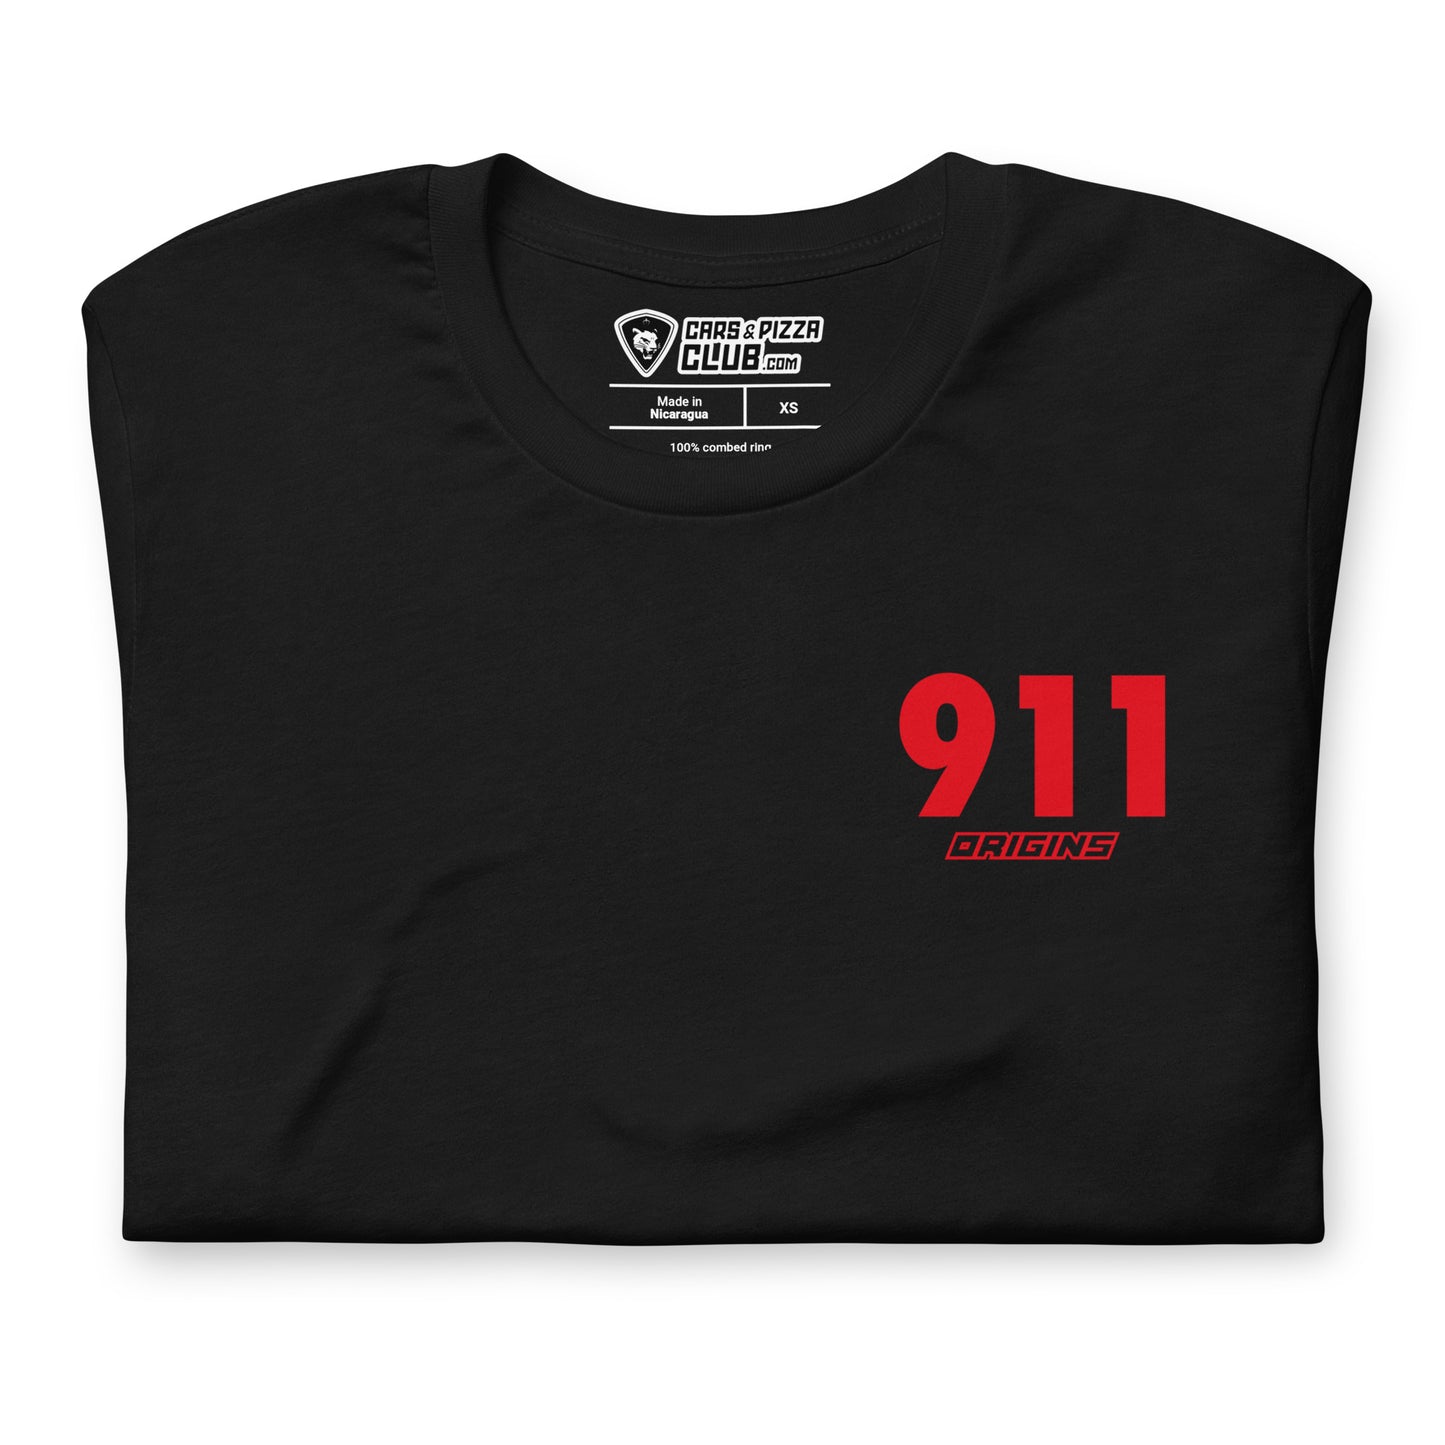 Camiseta unisex 992 GT3RS